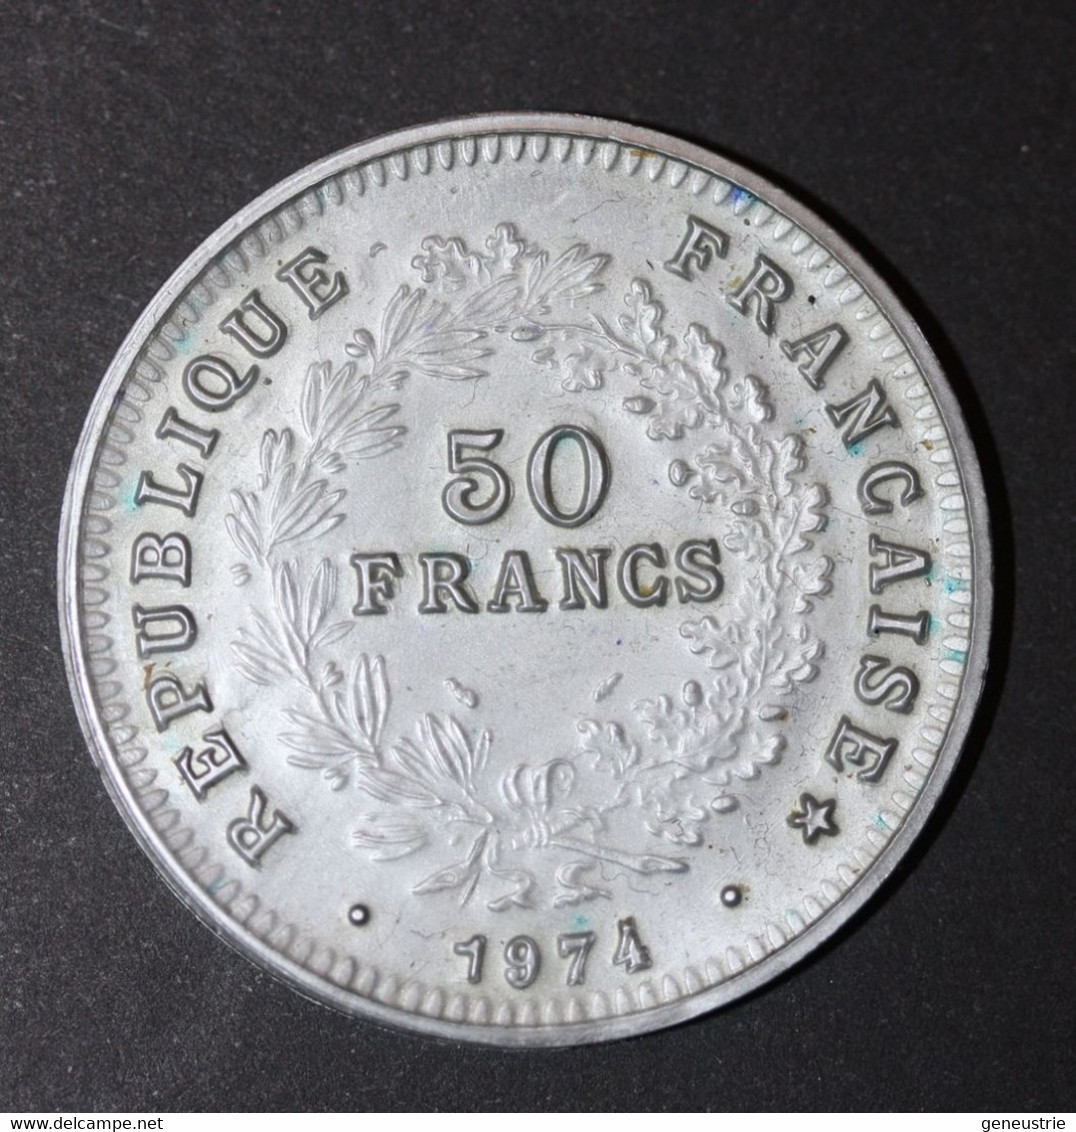 Pièce De 50 Francs Type Hercule 1974 - Jeton Plastique école En Francs Années 60 - Coins School Token - Professionnels / De Société